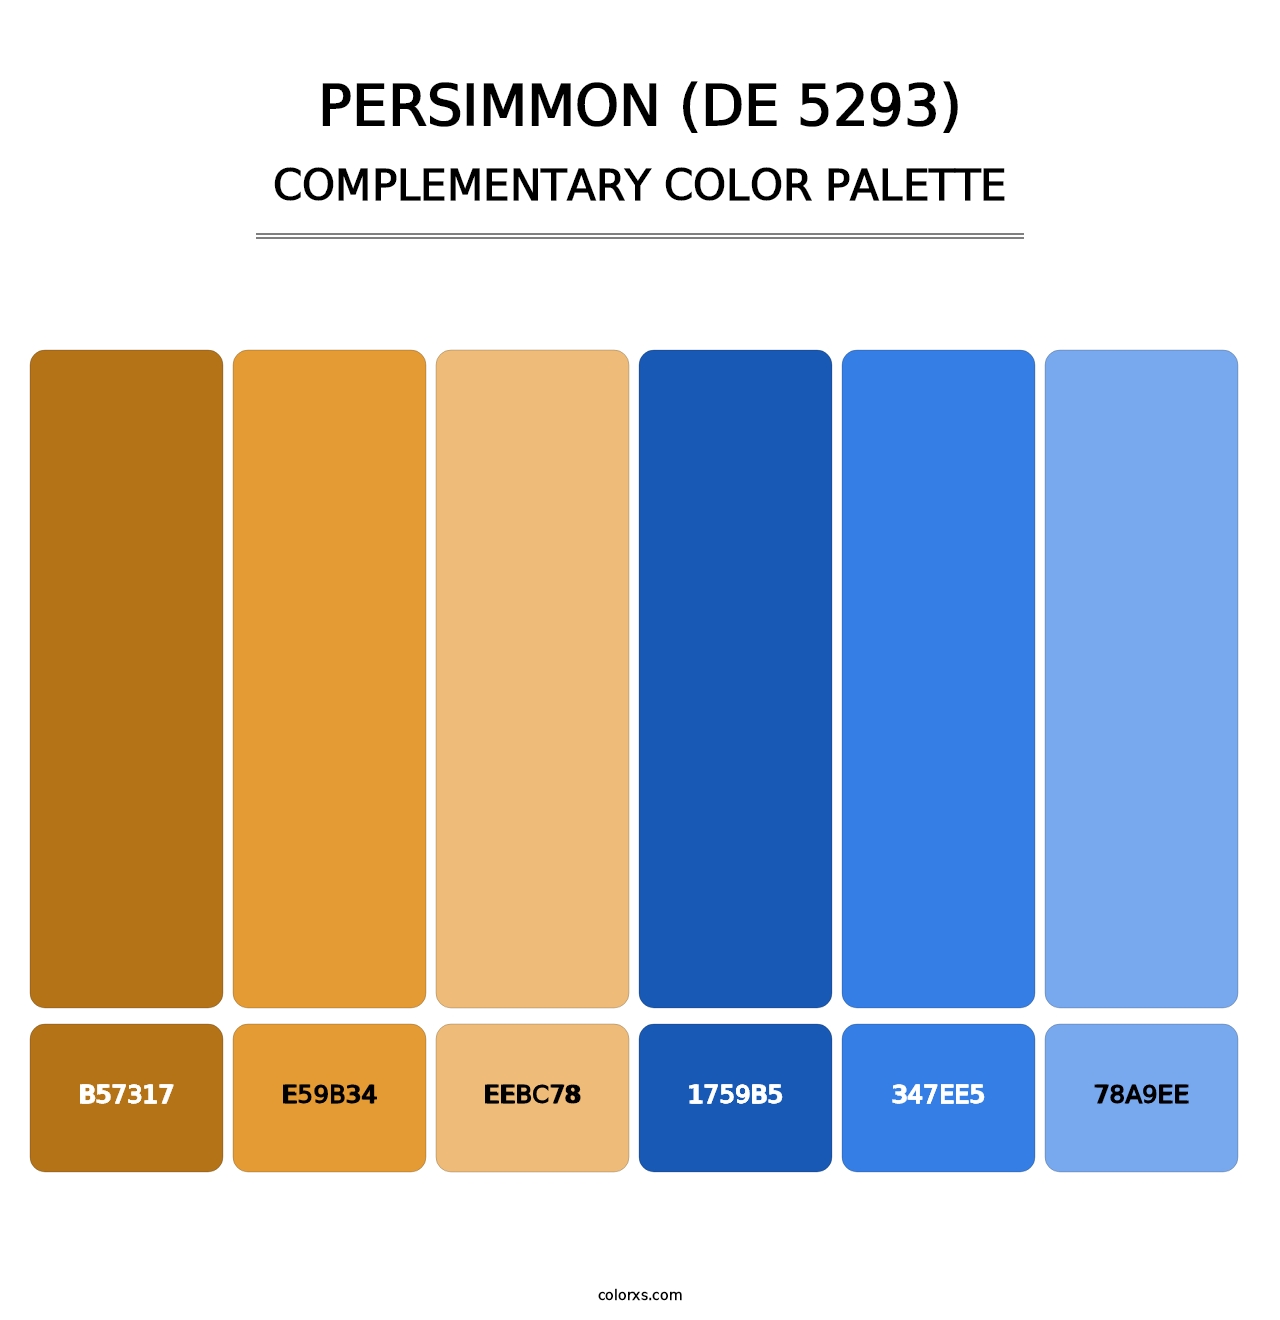 Persimmon (DE 5293) - Complementary Color Palette